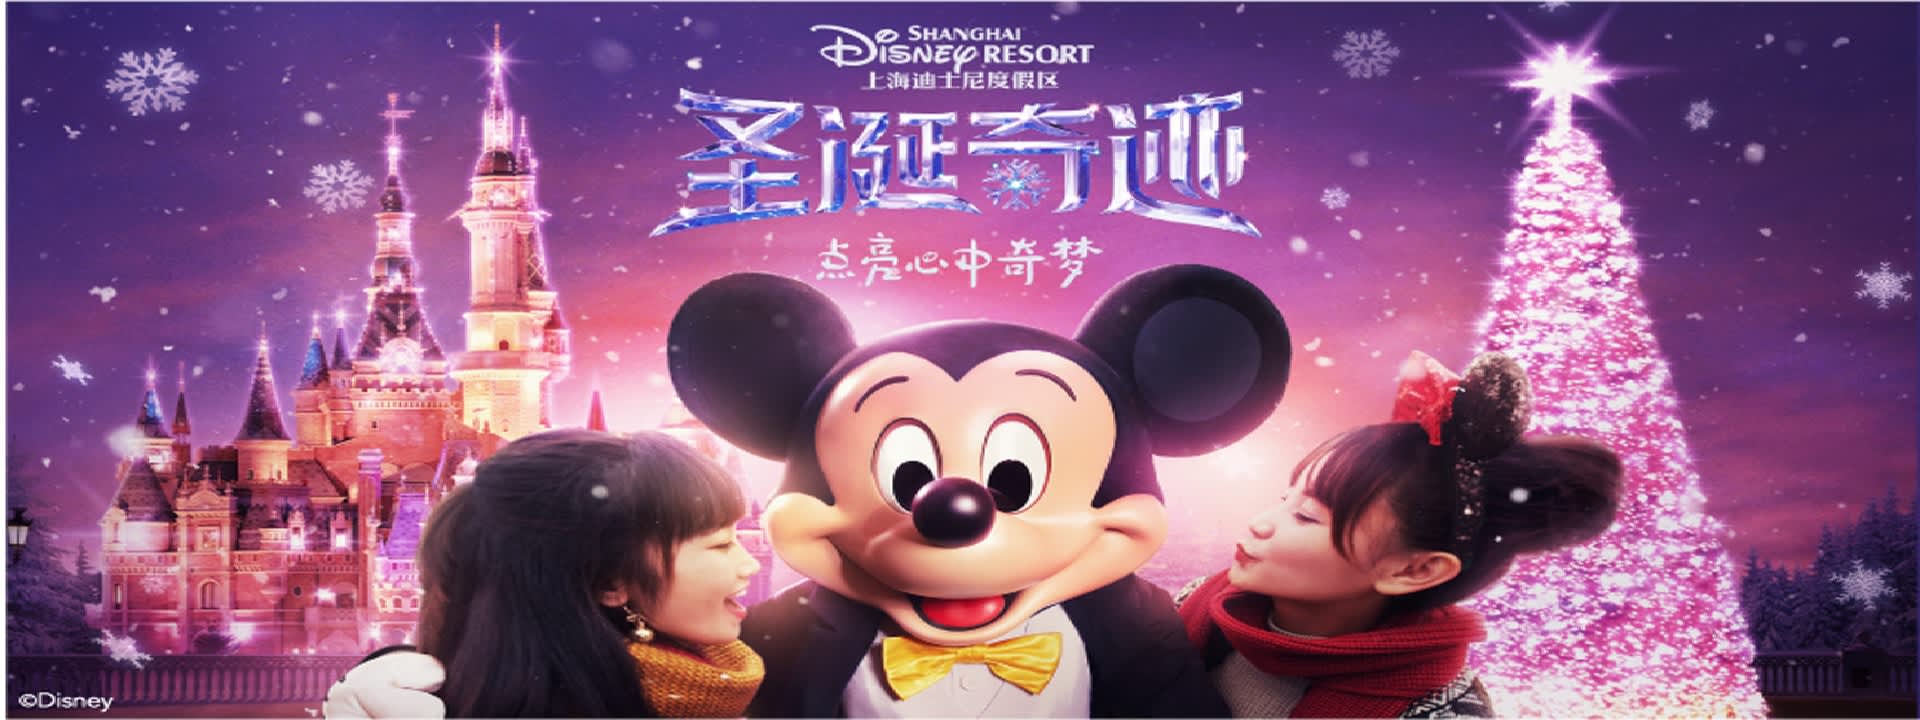 Shanghai Disneyland 1 Day Ticket - Klook